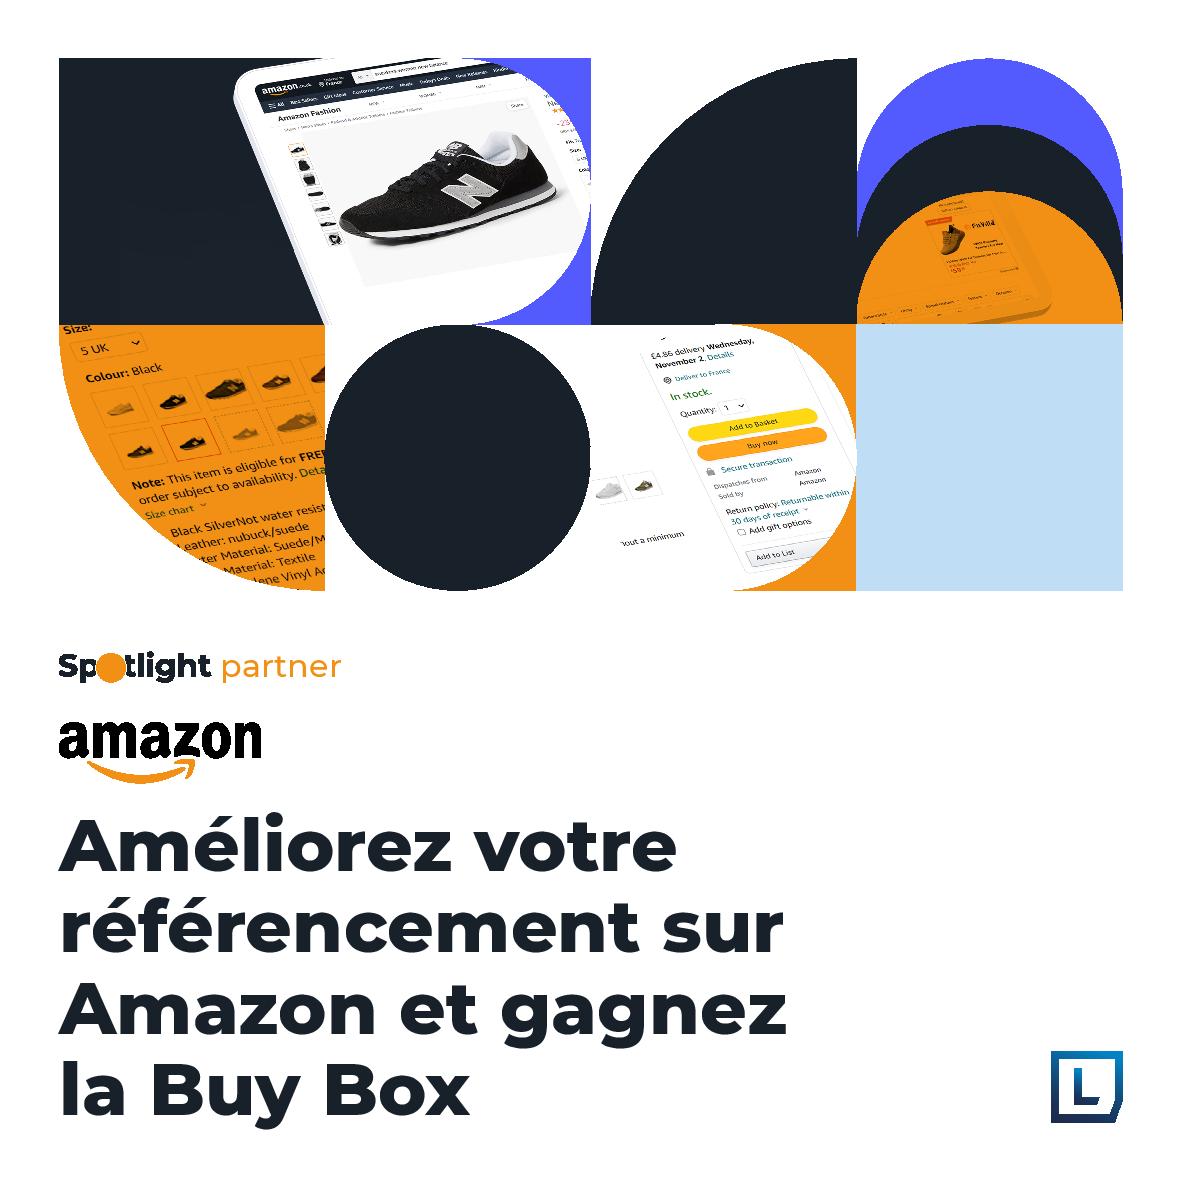 Remportez la Buy Box sur Amazon